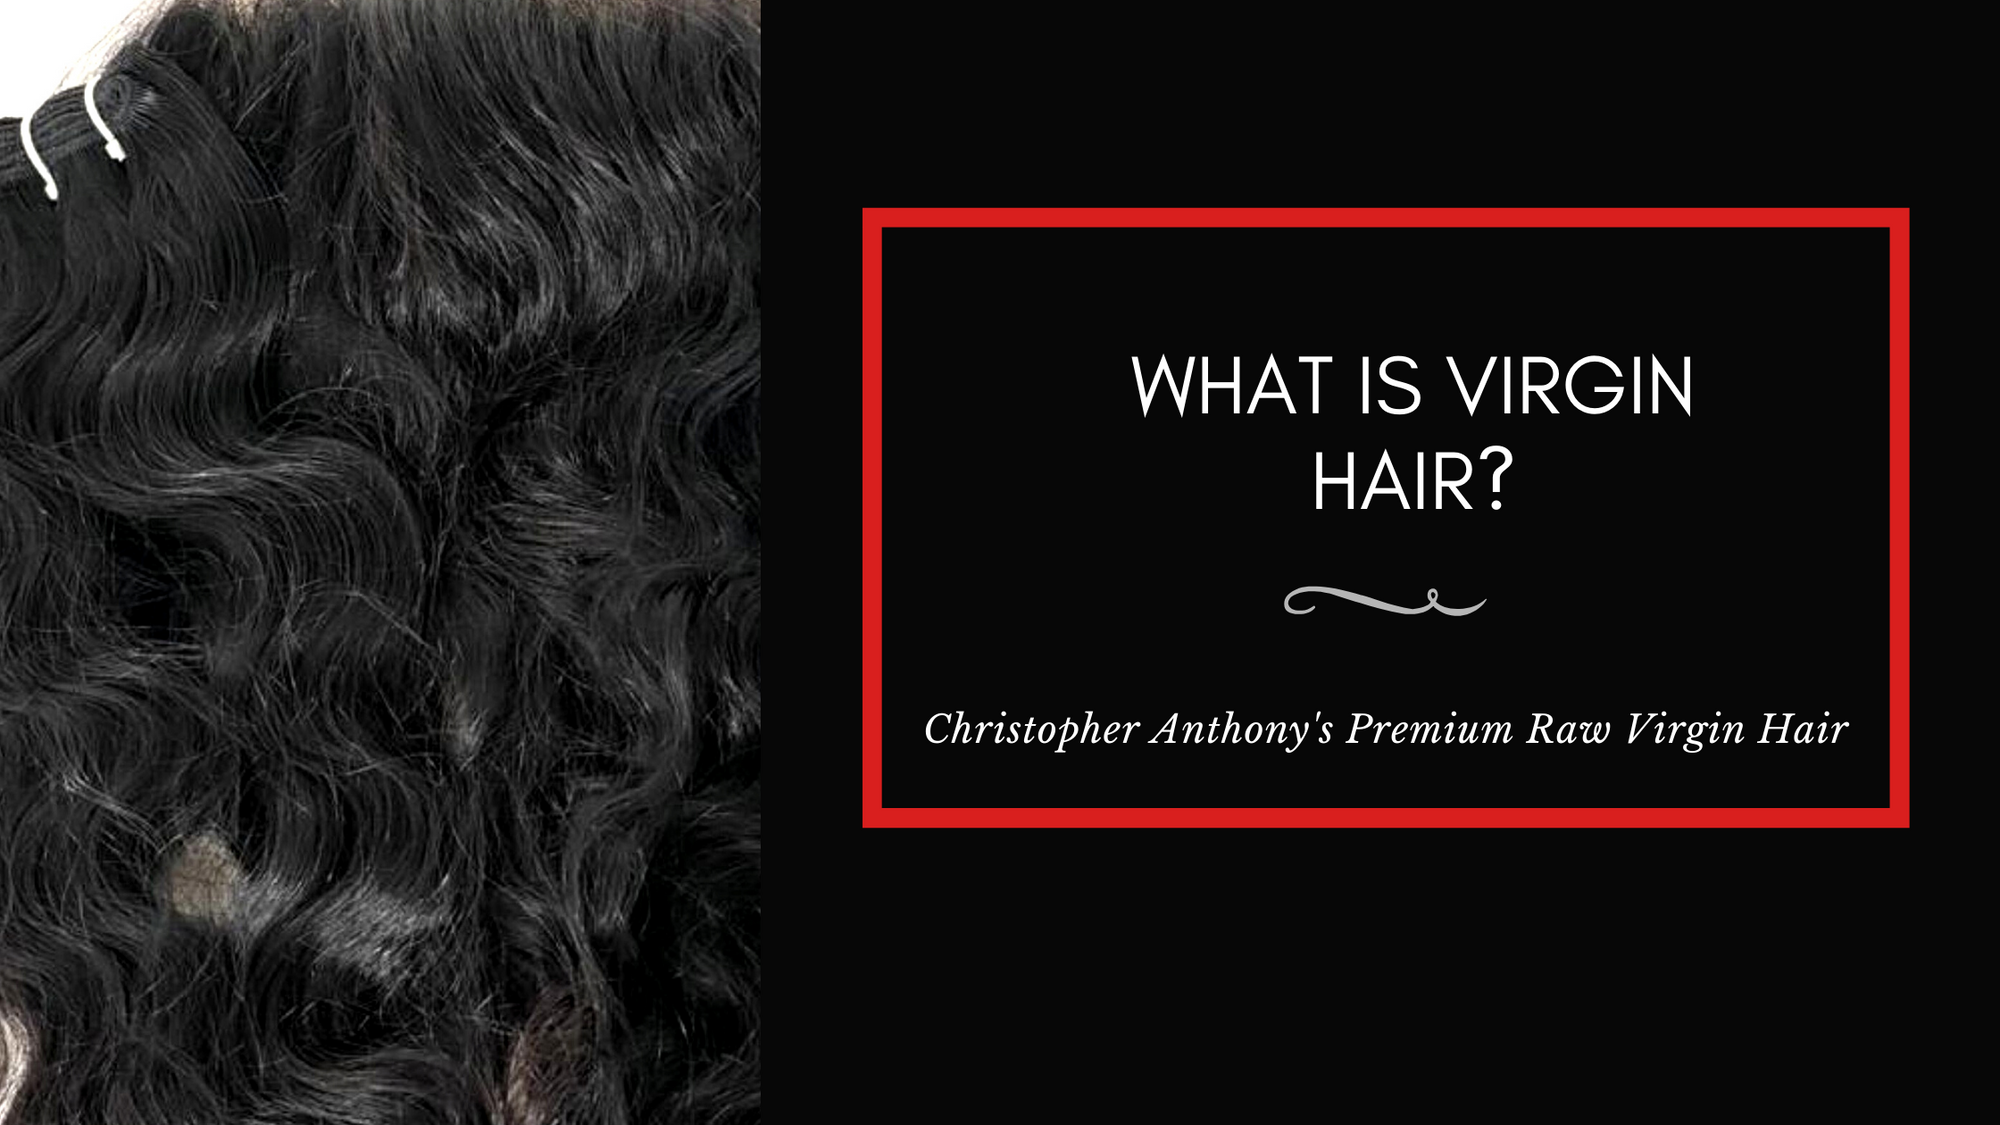 What is Virgin Hair?